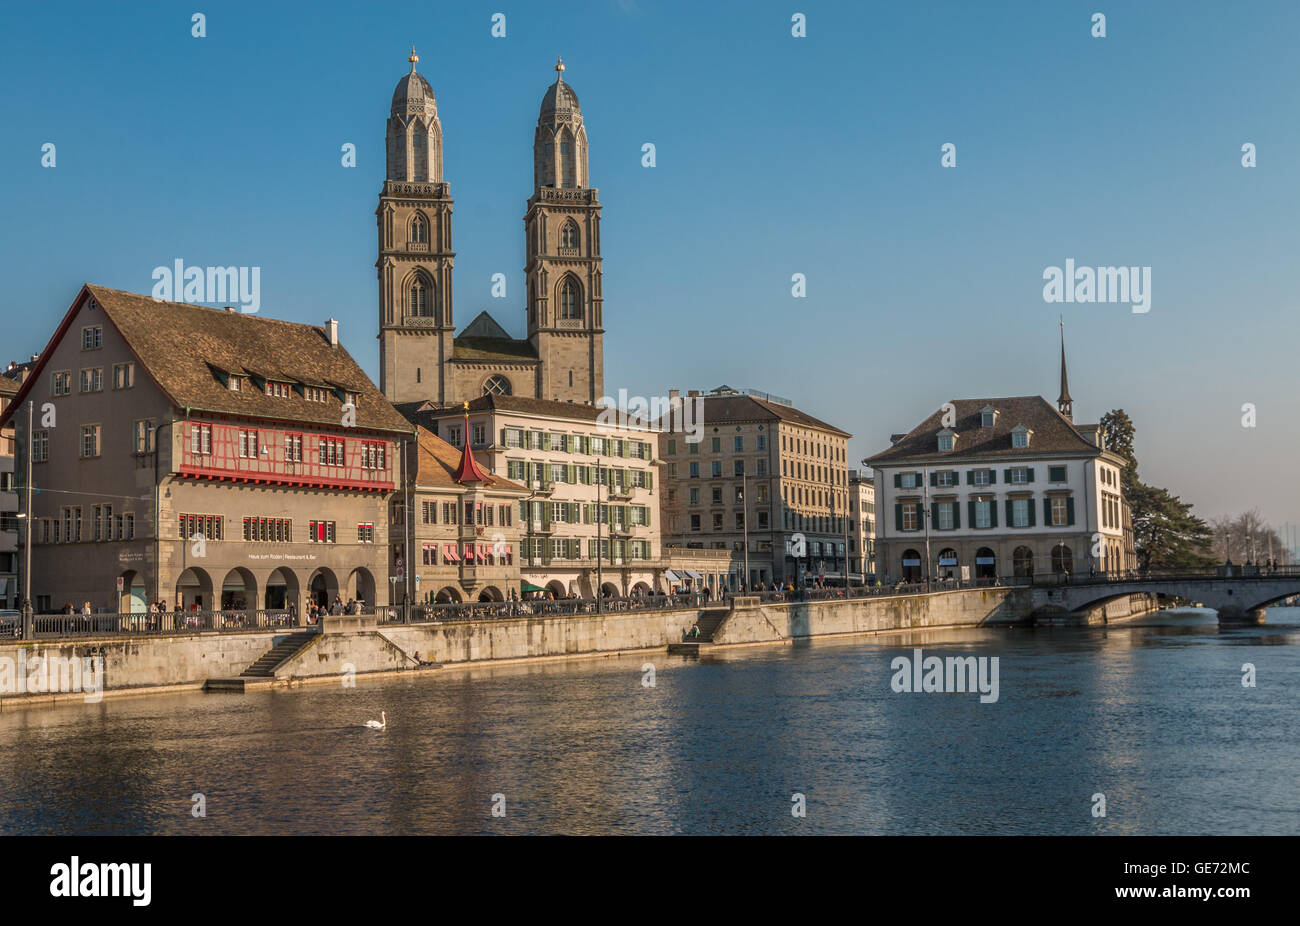 Old city of Zurich Switzerland Stock Photo